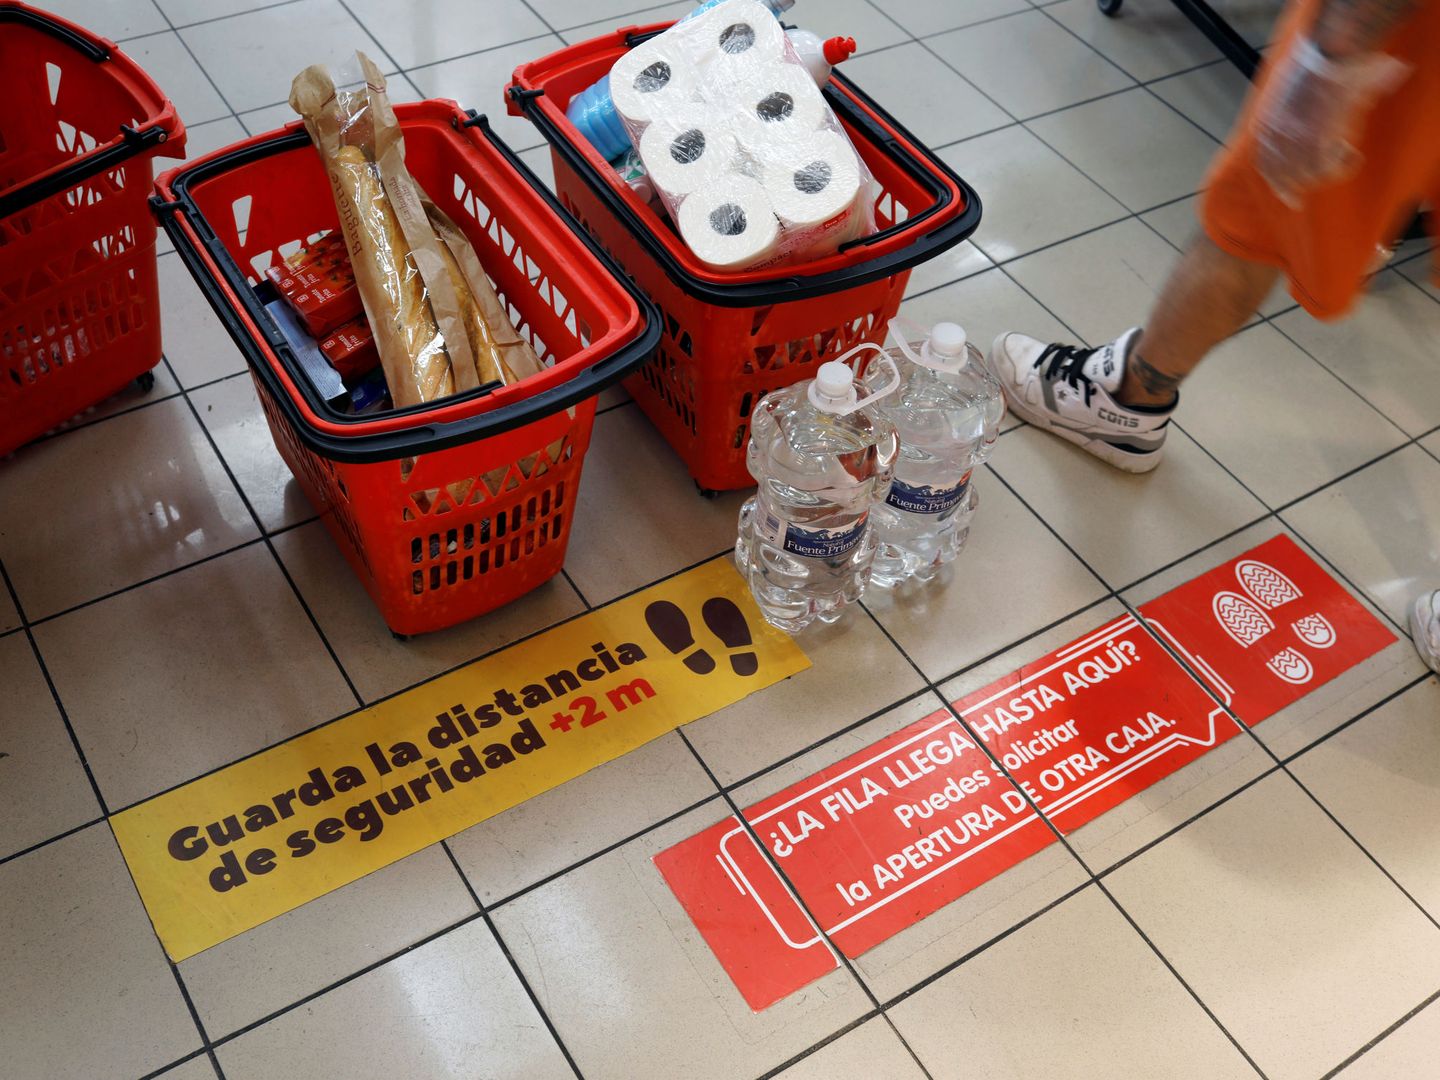 Un supermercado recuerda que se guarde la distancia de seguridad en caja (REUTERS)